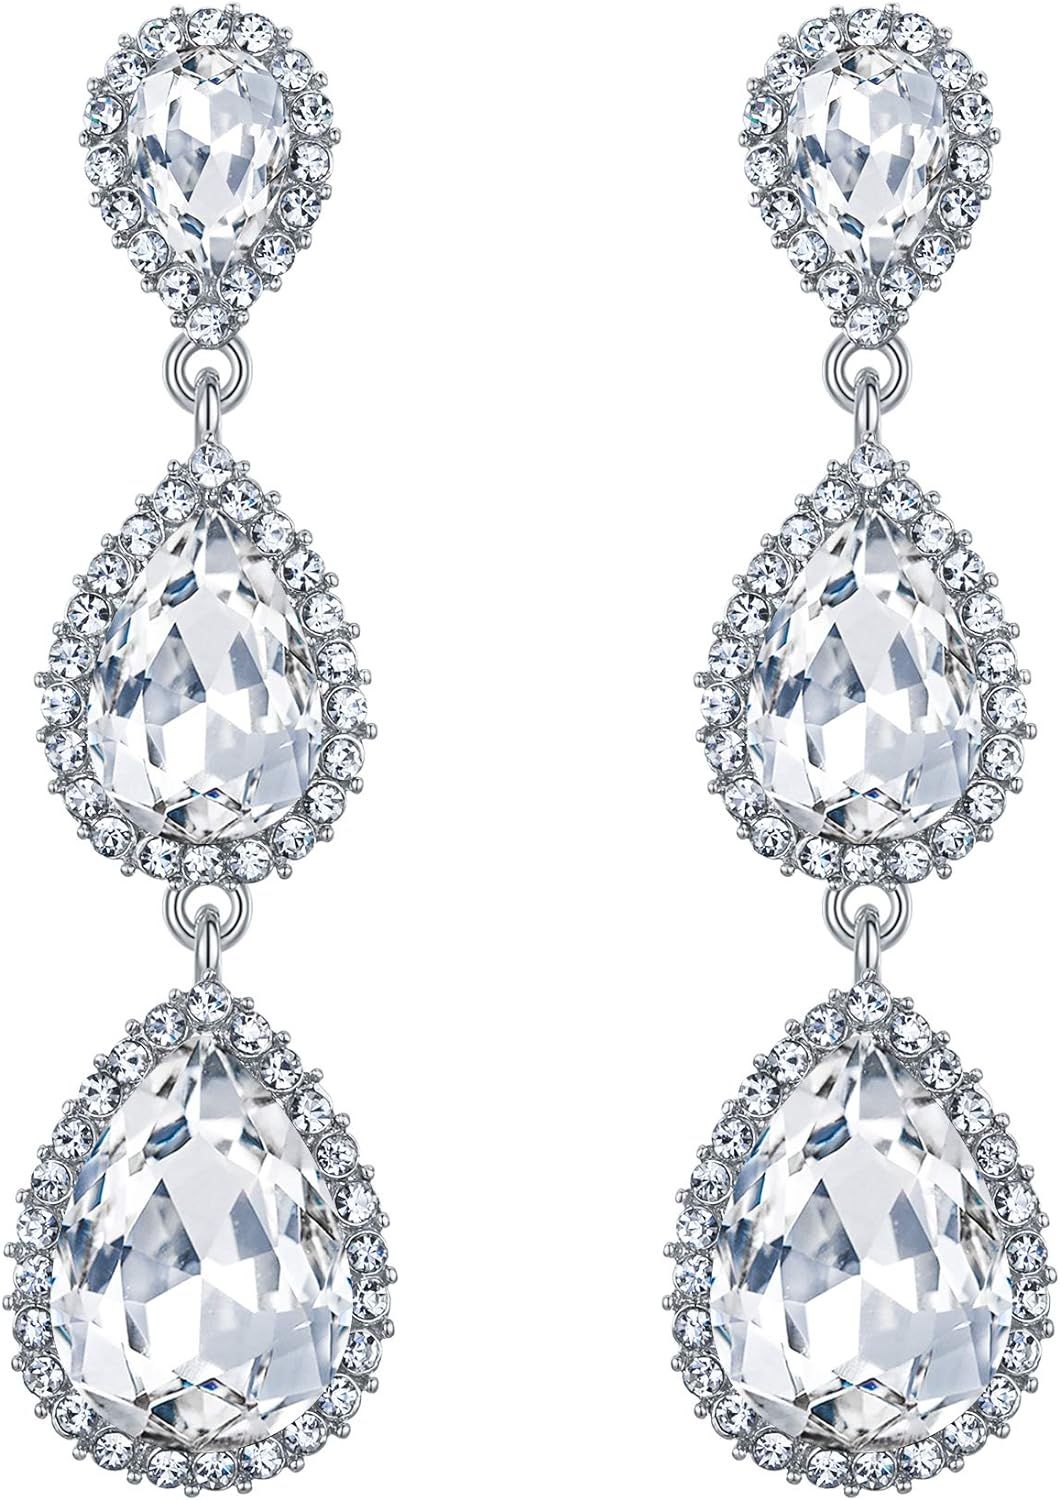 EleQueen Women's Gold-tone Austrian Crystal Teardrop Pear Shape 2.5 Inch Long Earrings Emerald Co... | Amazon (US)